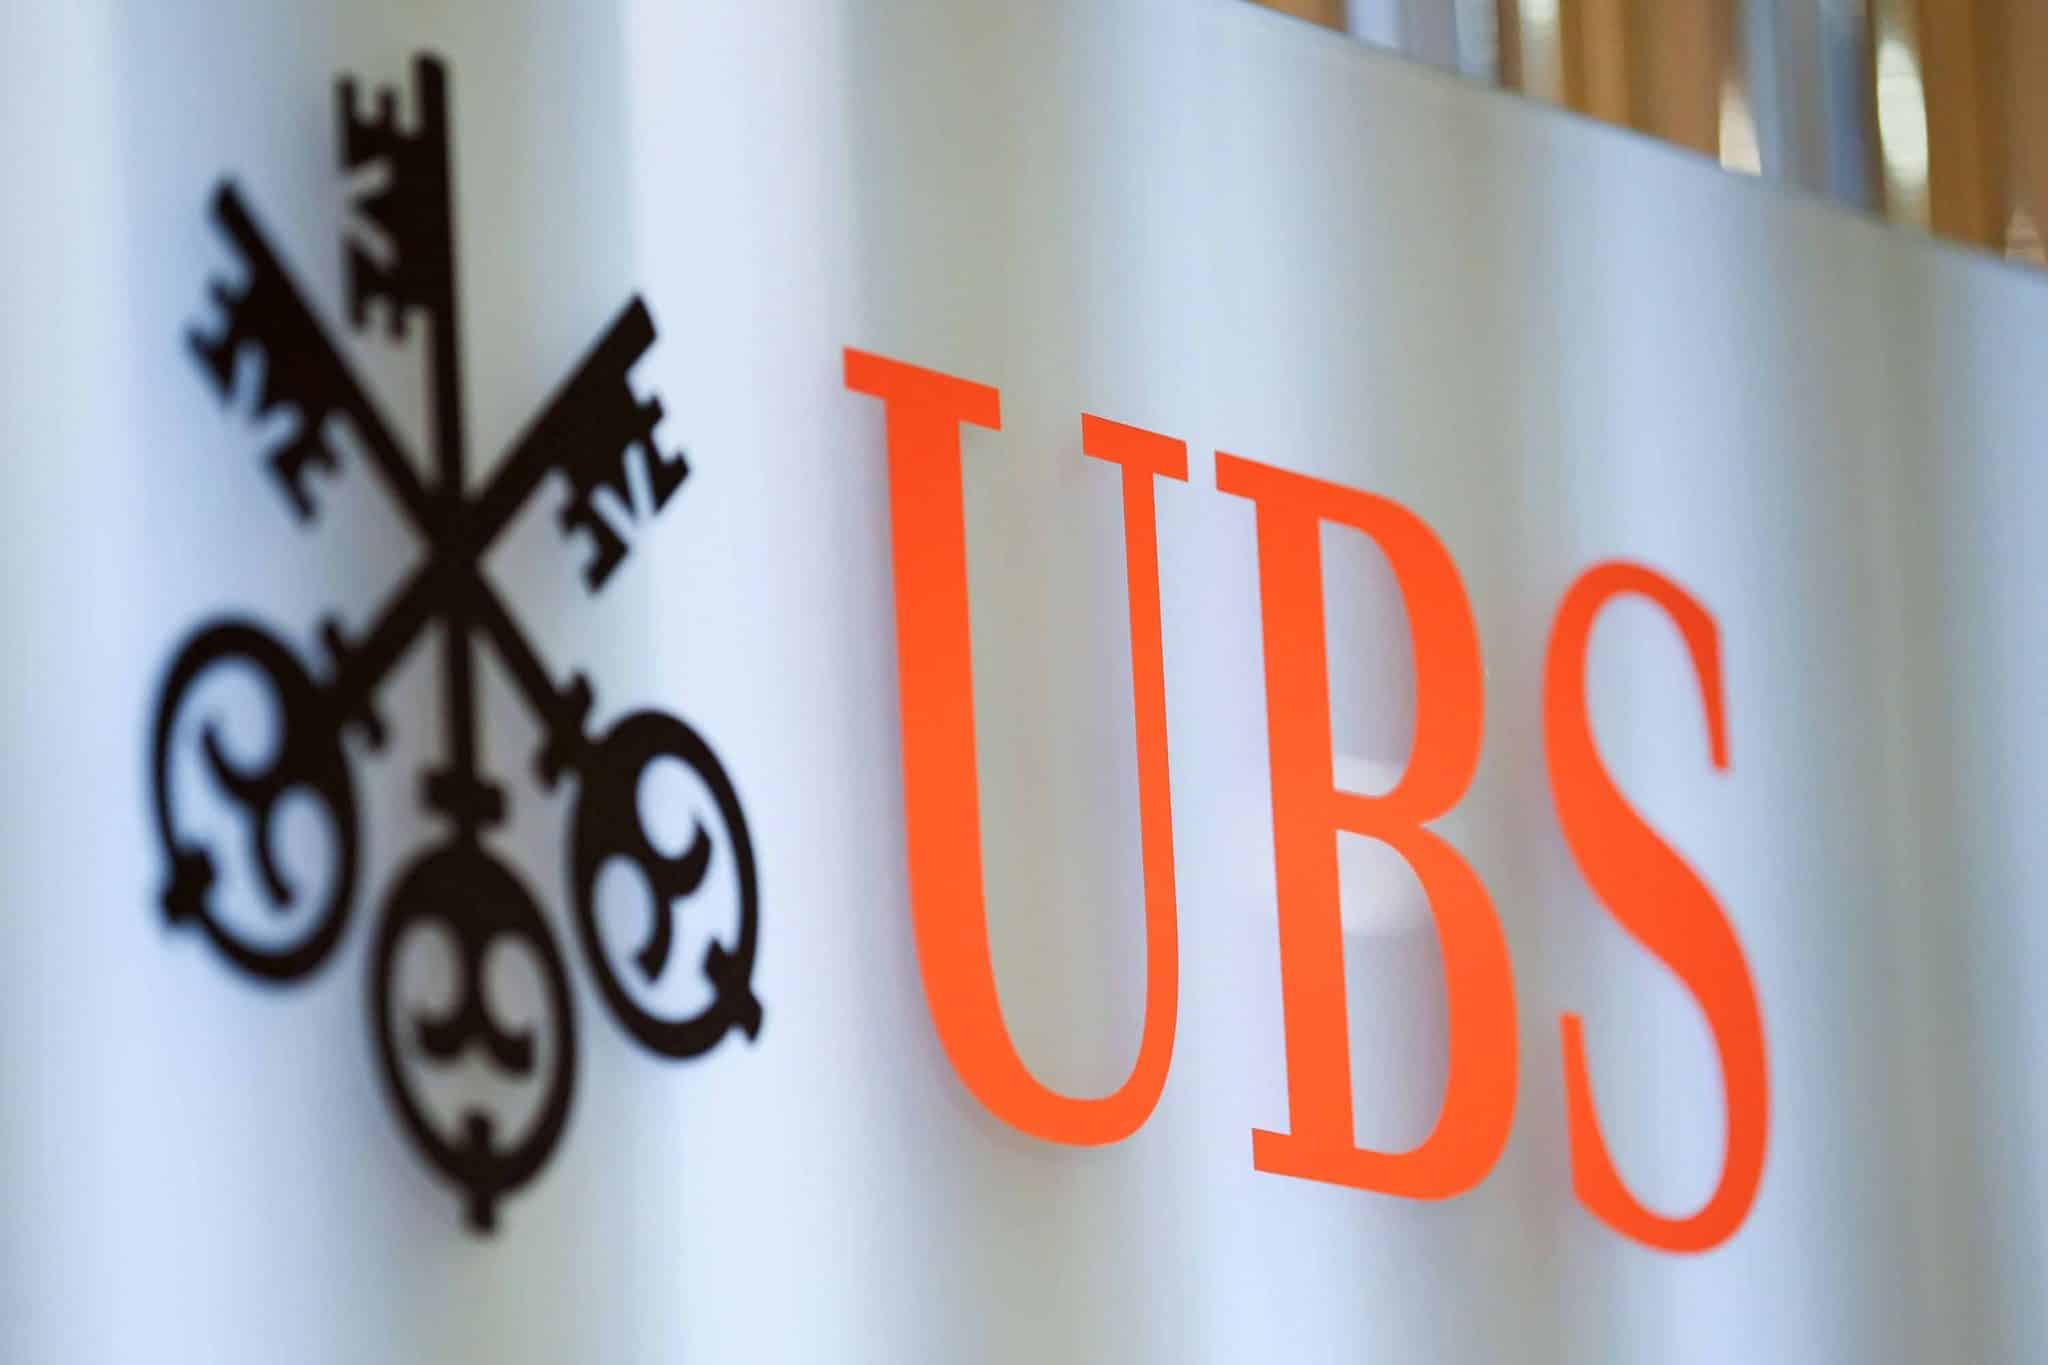 Káº¿t quáº£ hÃ¬nh áº£nh cho UBS australia